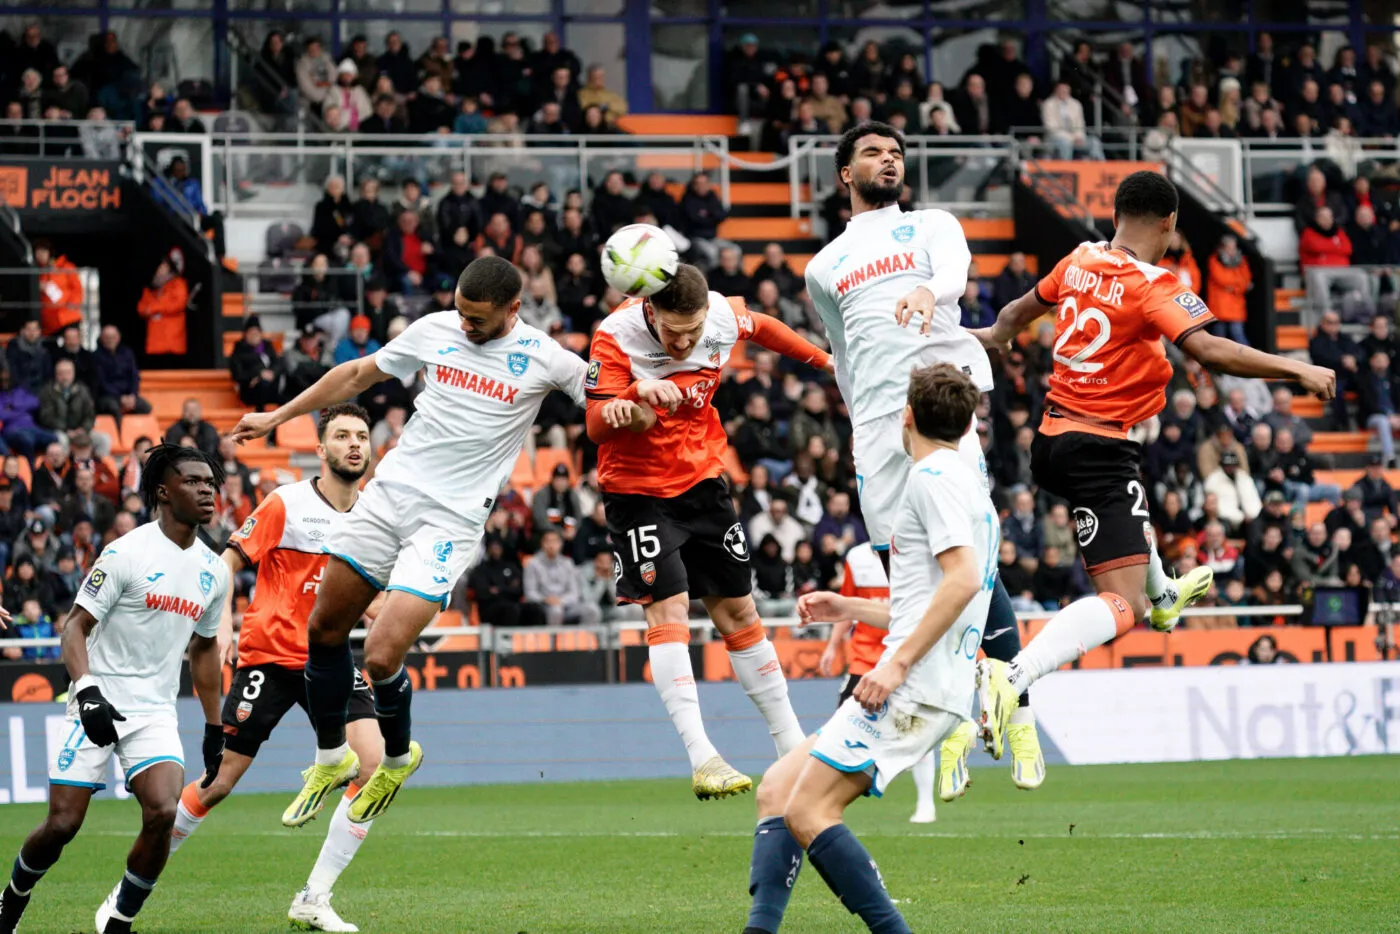 Un match nul dingue entre Lorient et Le Havre, Reims et Strasbourg piétinent